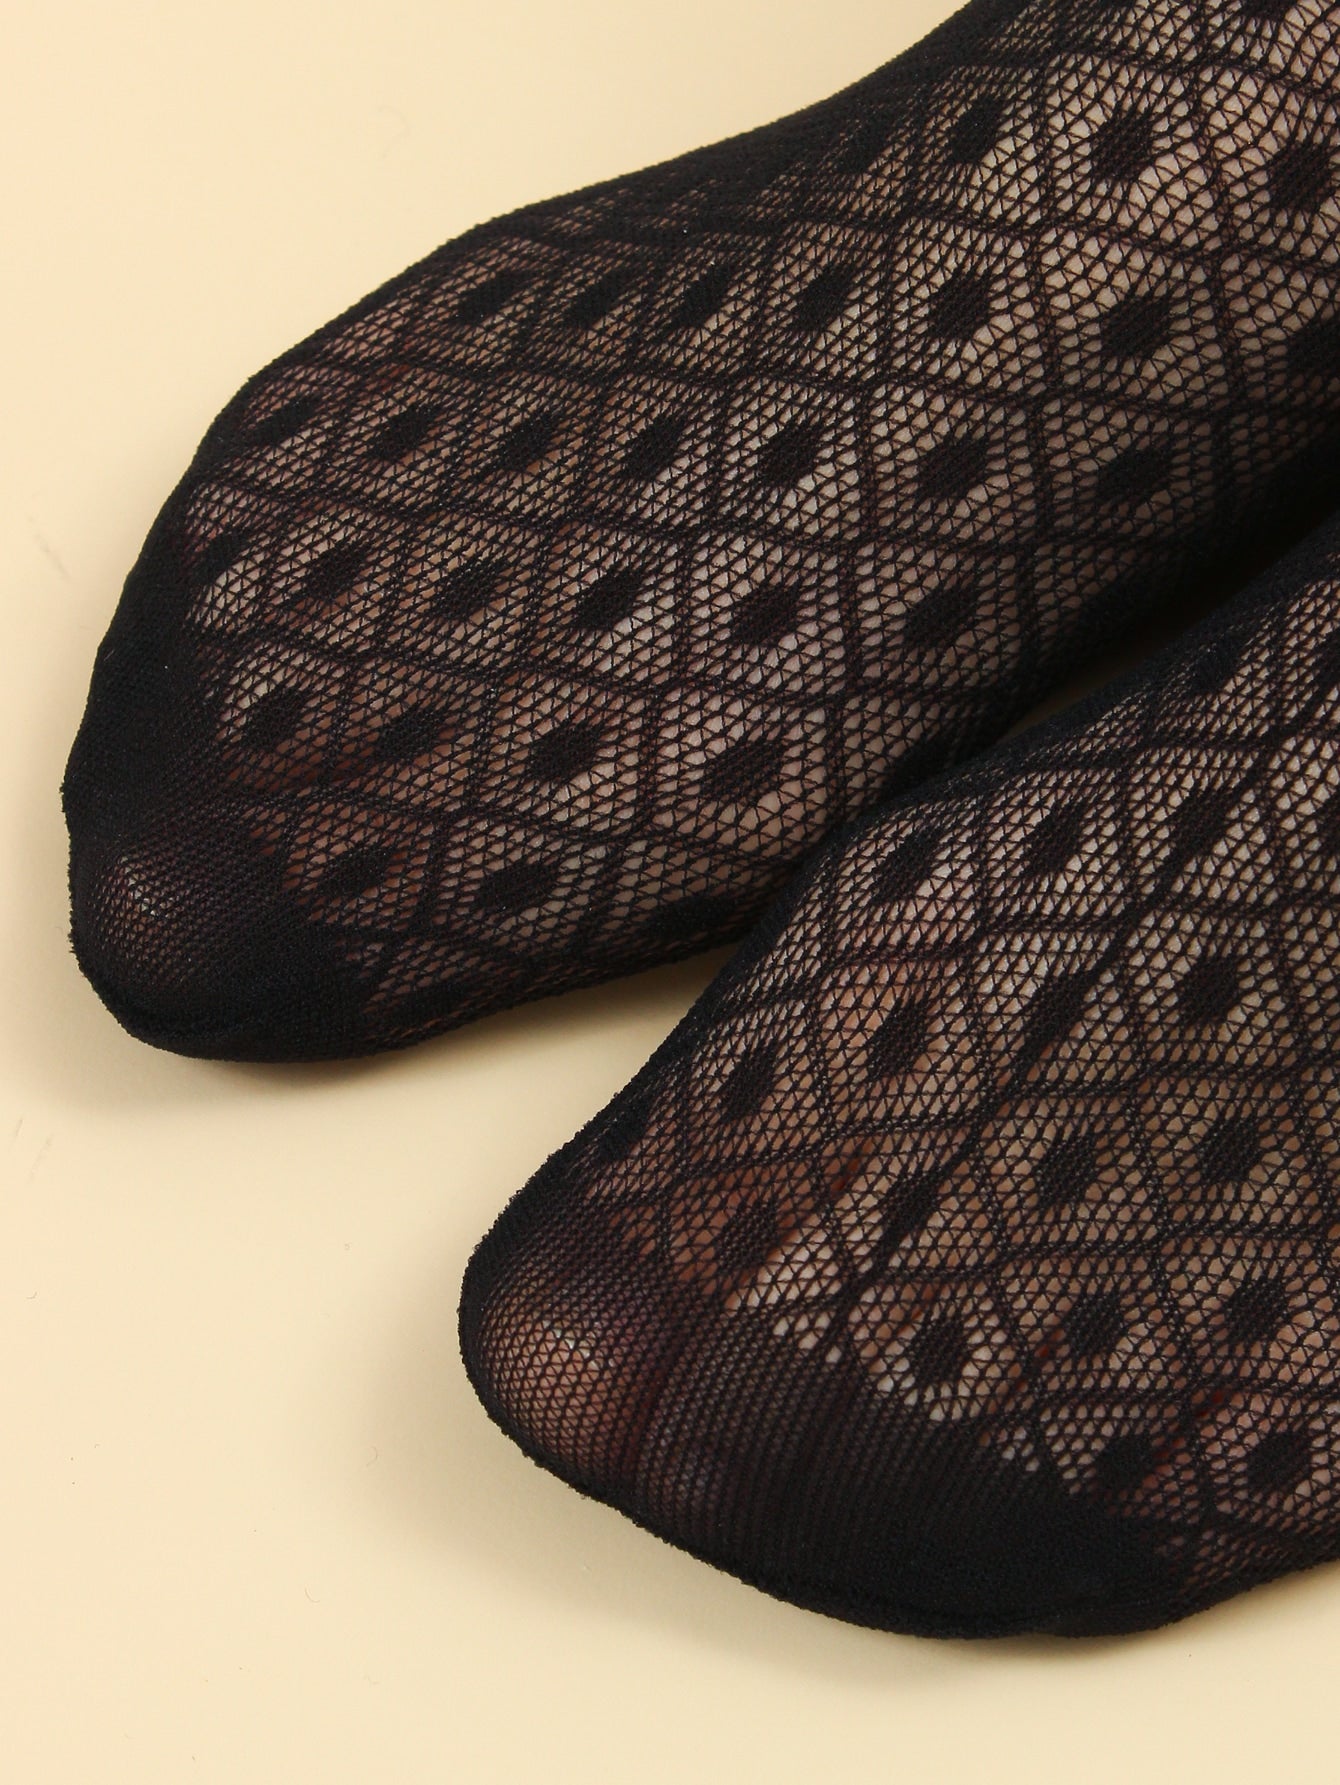 Calcetines sensuales de rejilla con lunares: 5 pares (perfectos debajo de los tobillos para darle un toque vintage)